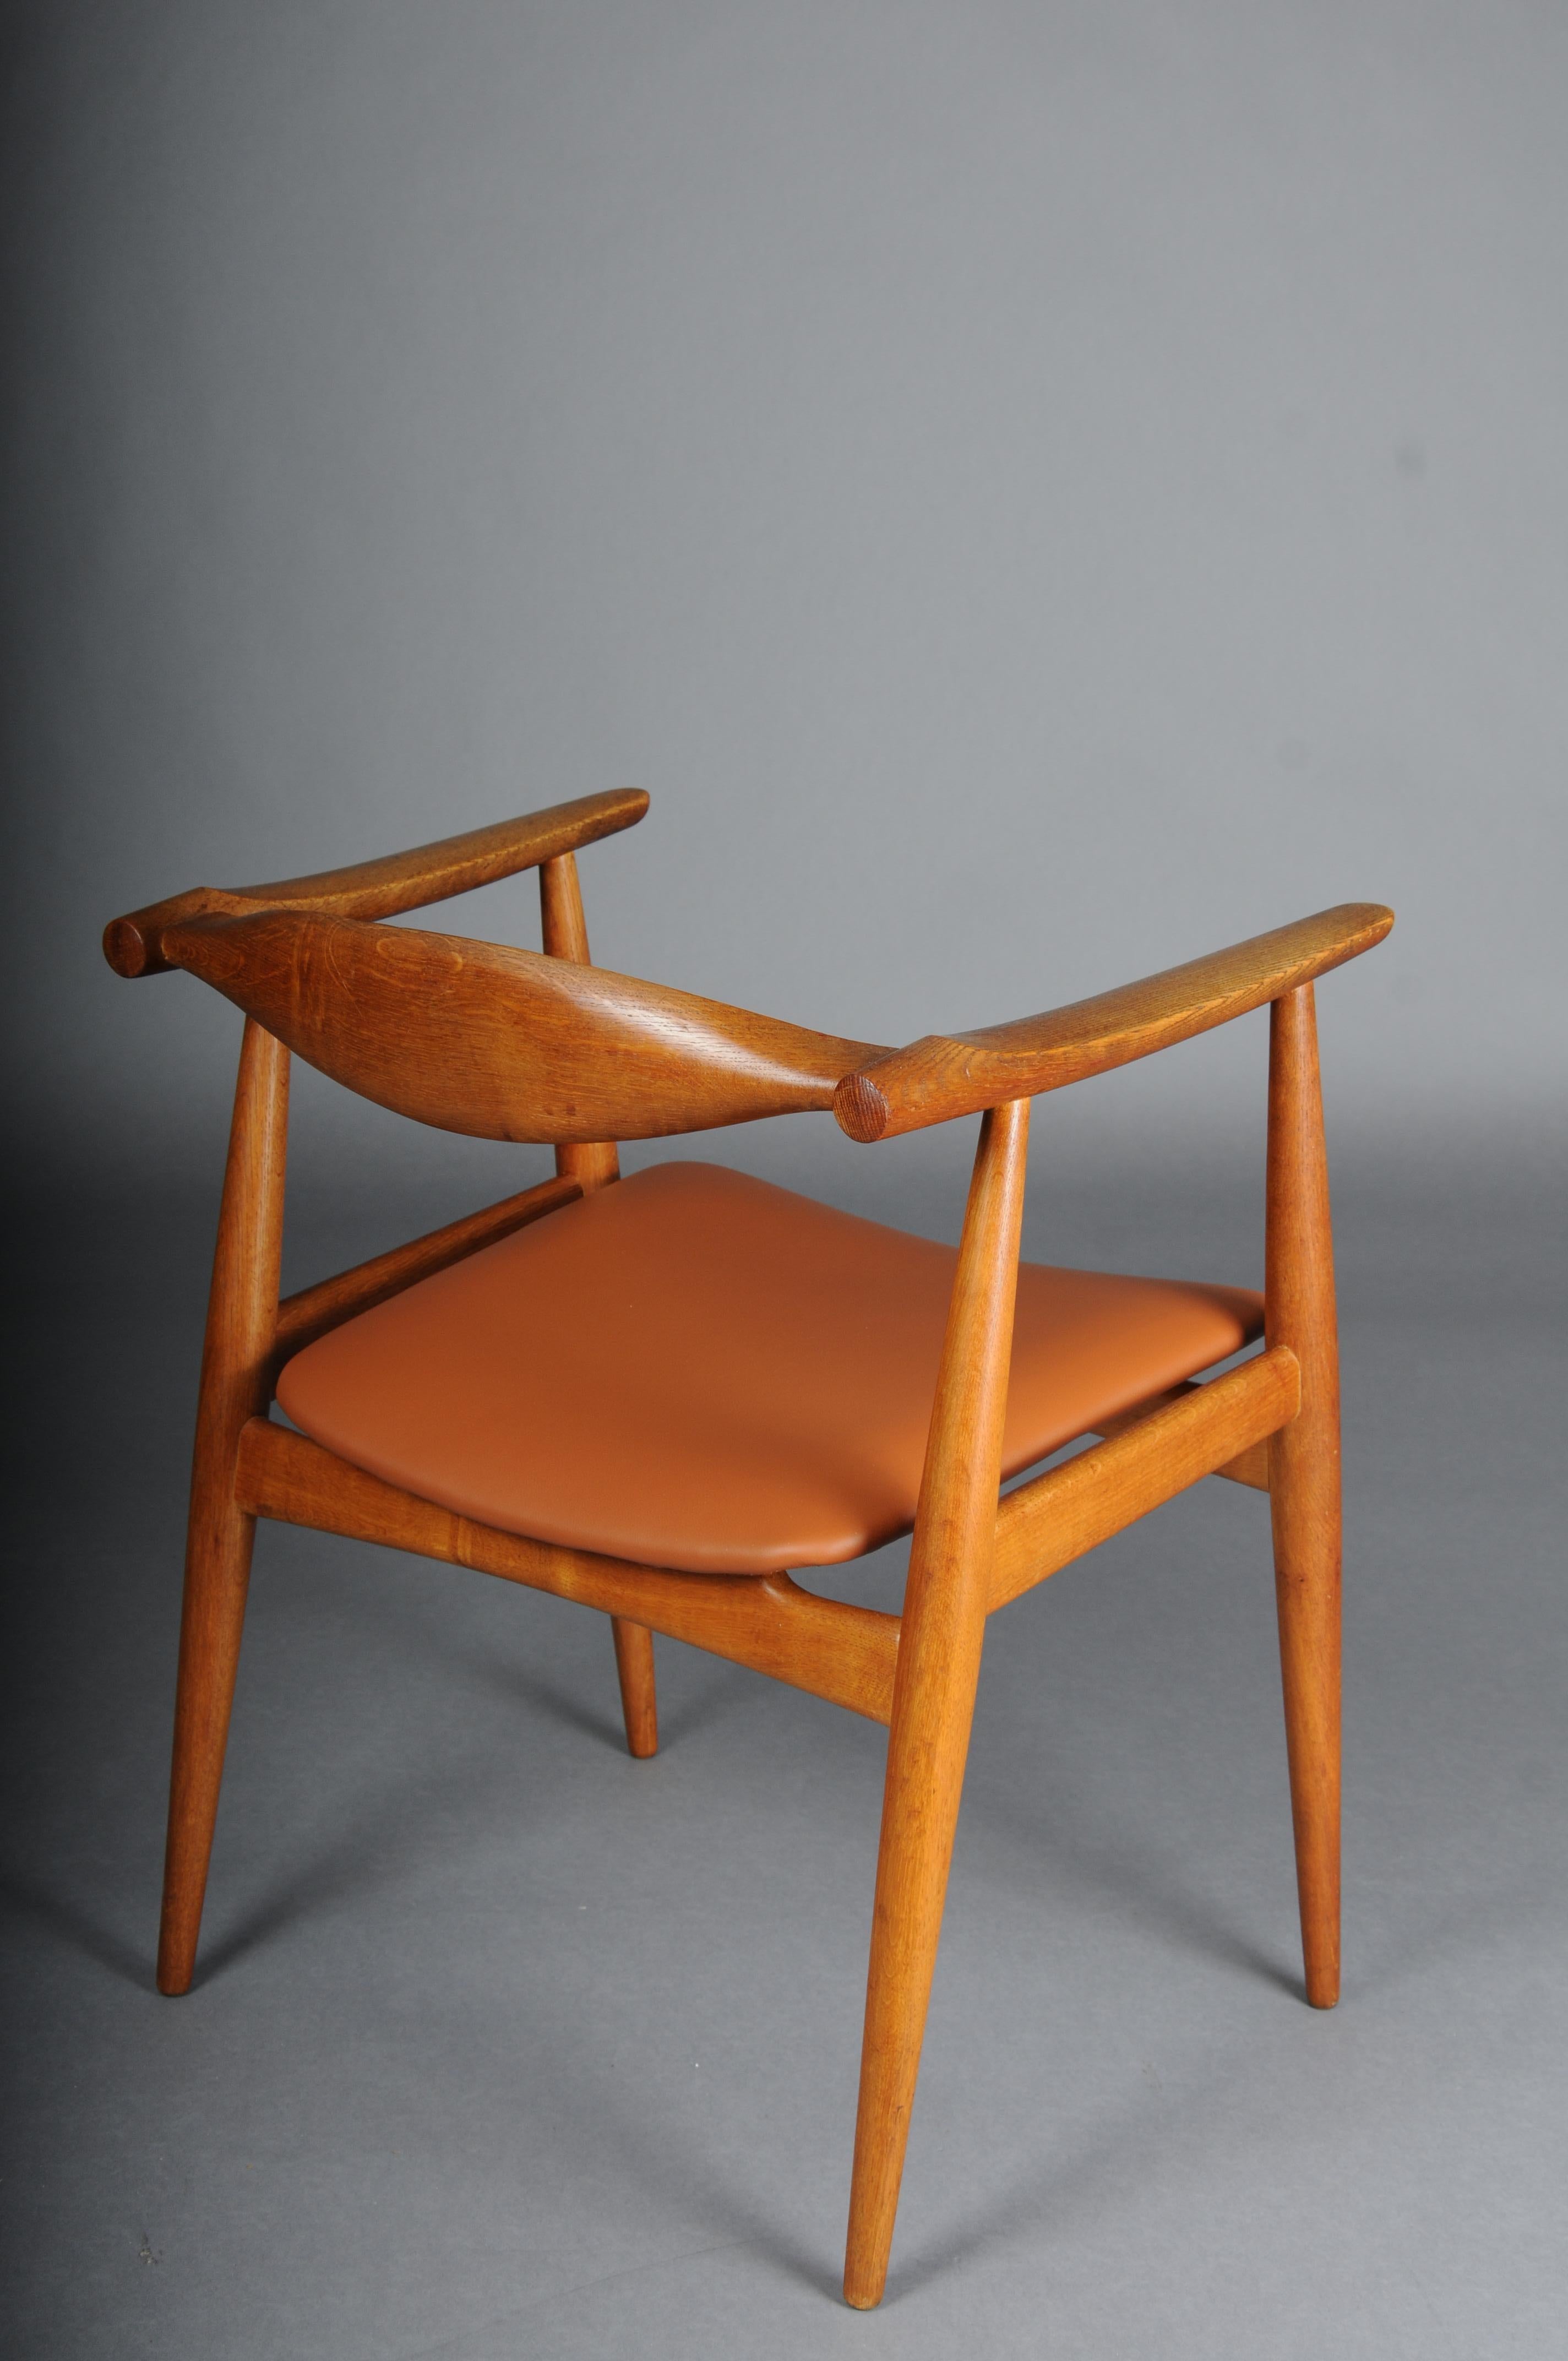 HANS J. WEGNER. Armchair, Teak/leather, Model CH-35, Carl Hansen & Son, Denmark. For Sale 3